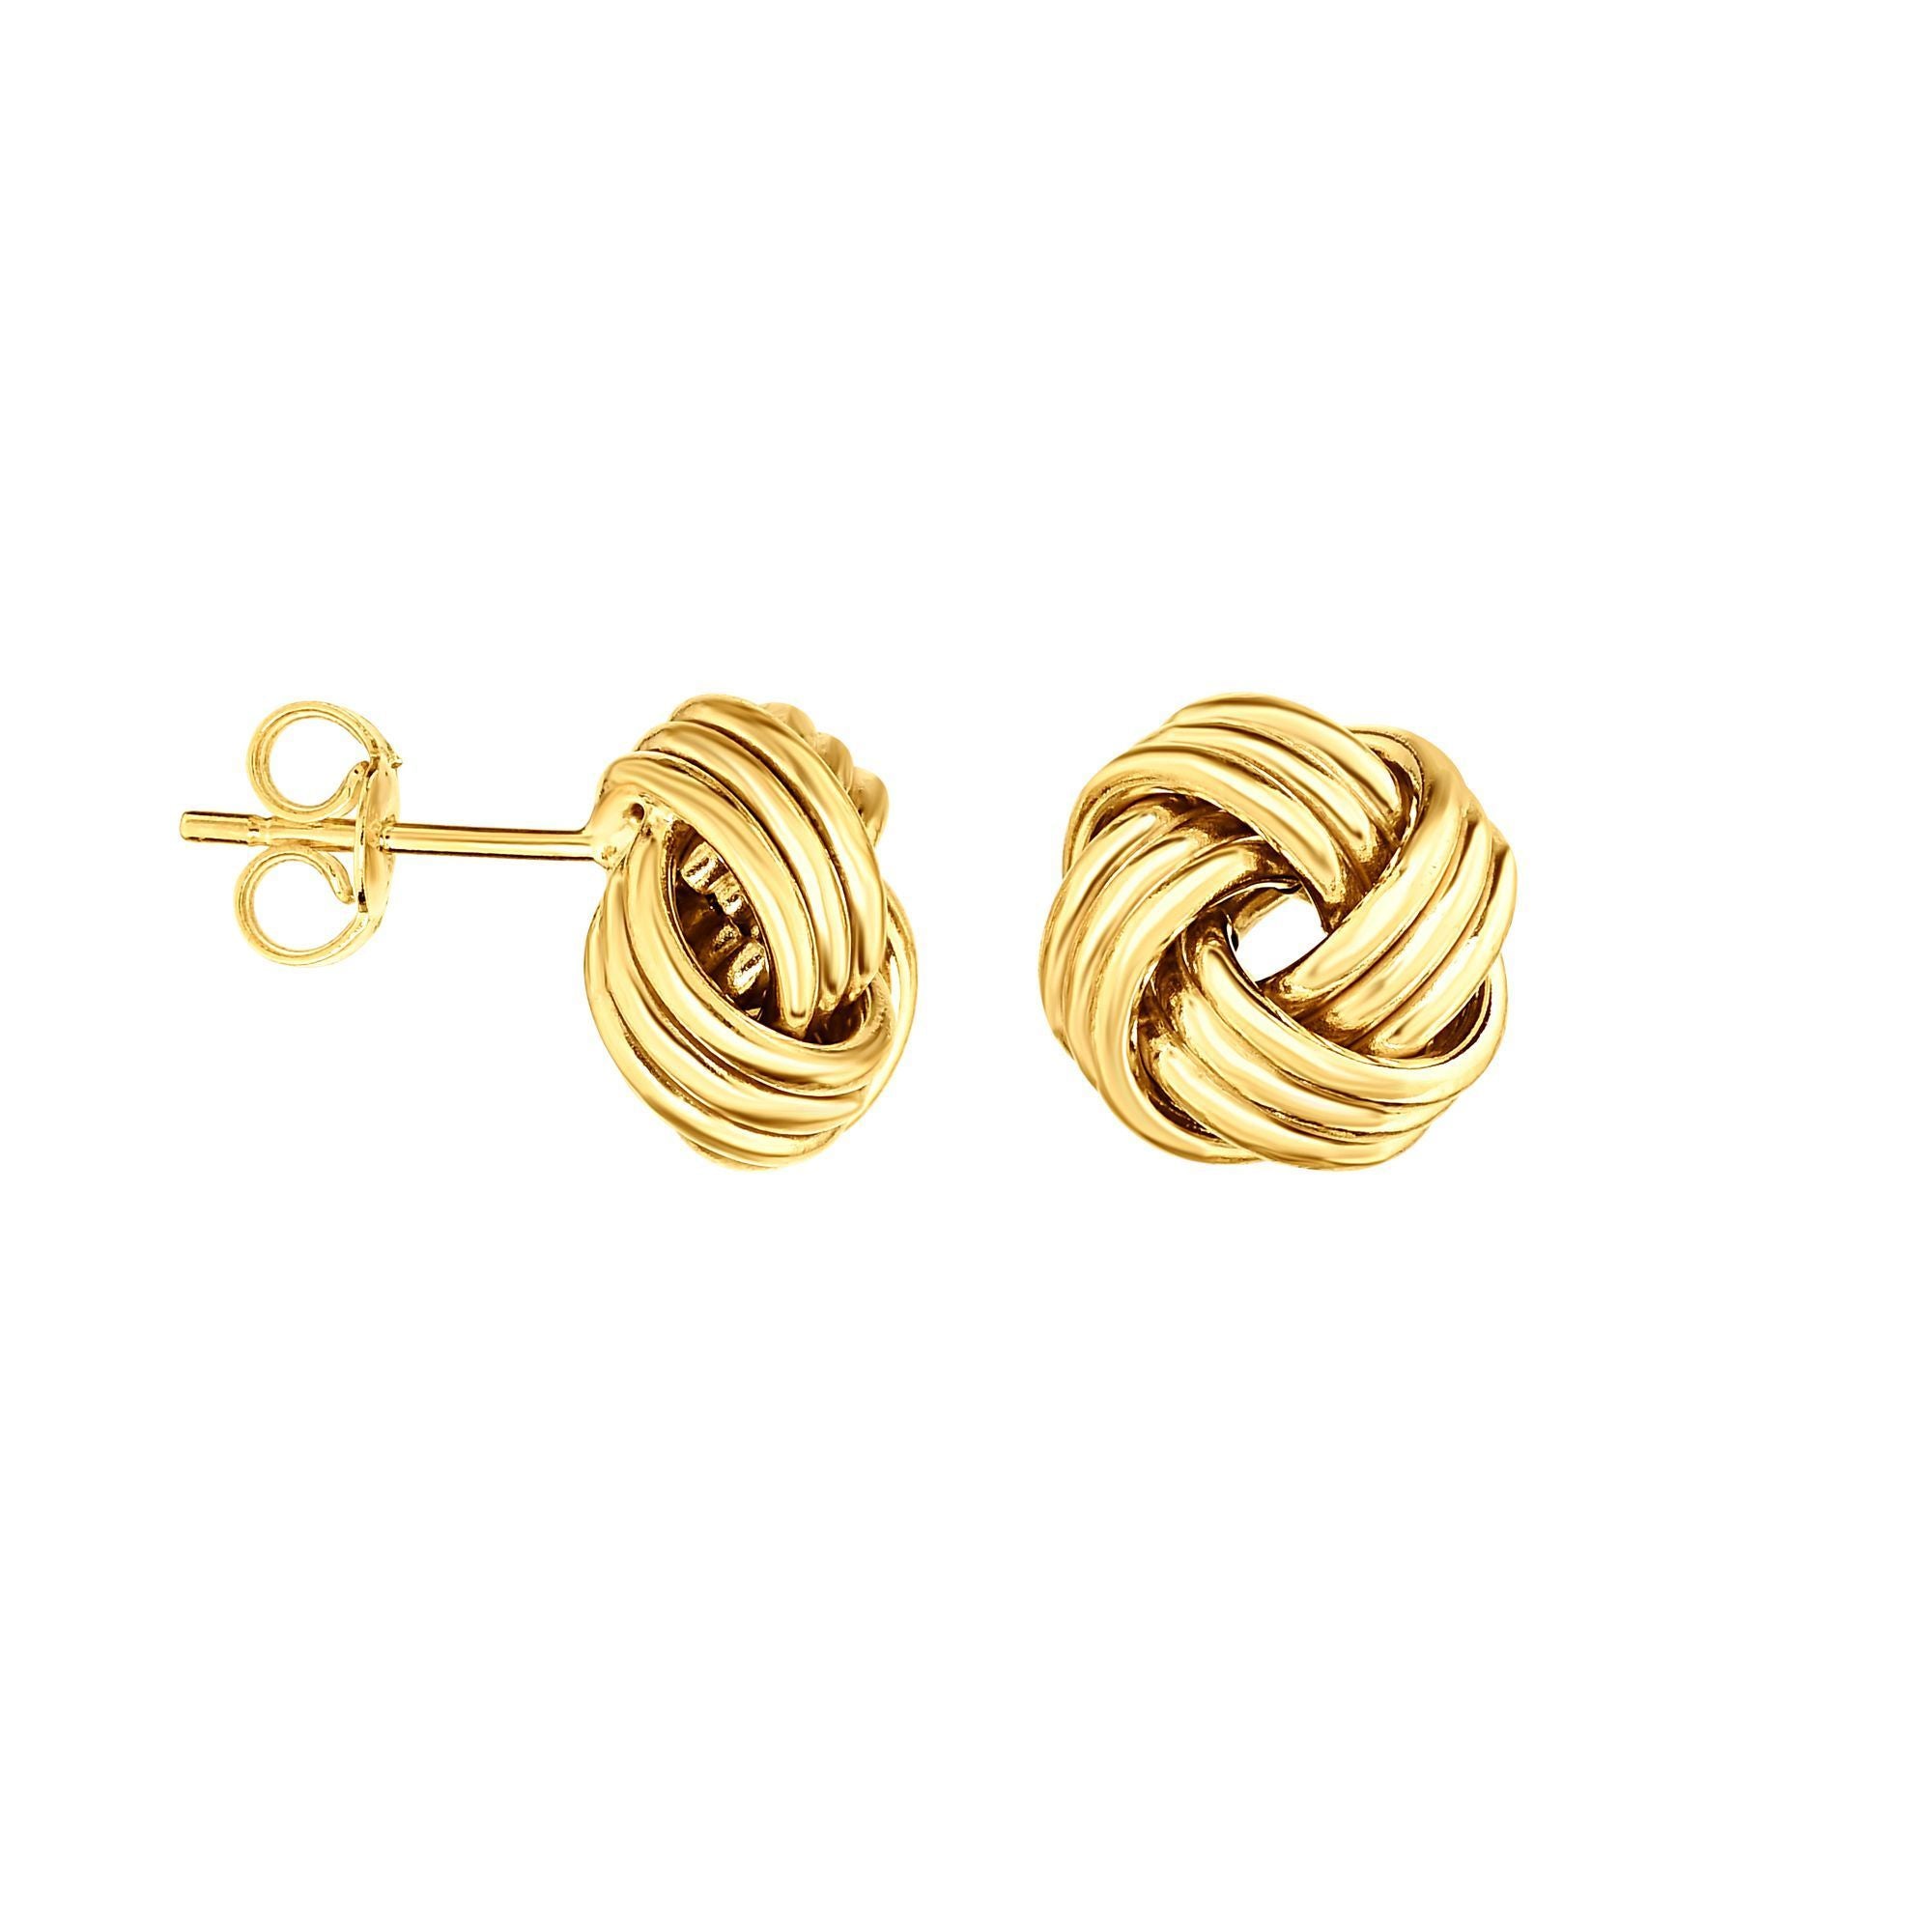 14k Italian Gold Love Knot Earrings, 3 Row Love Knot Stud Earrings